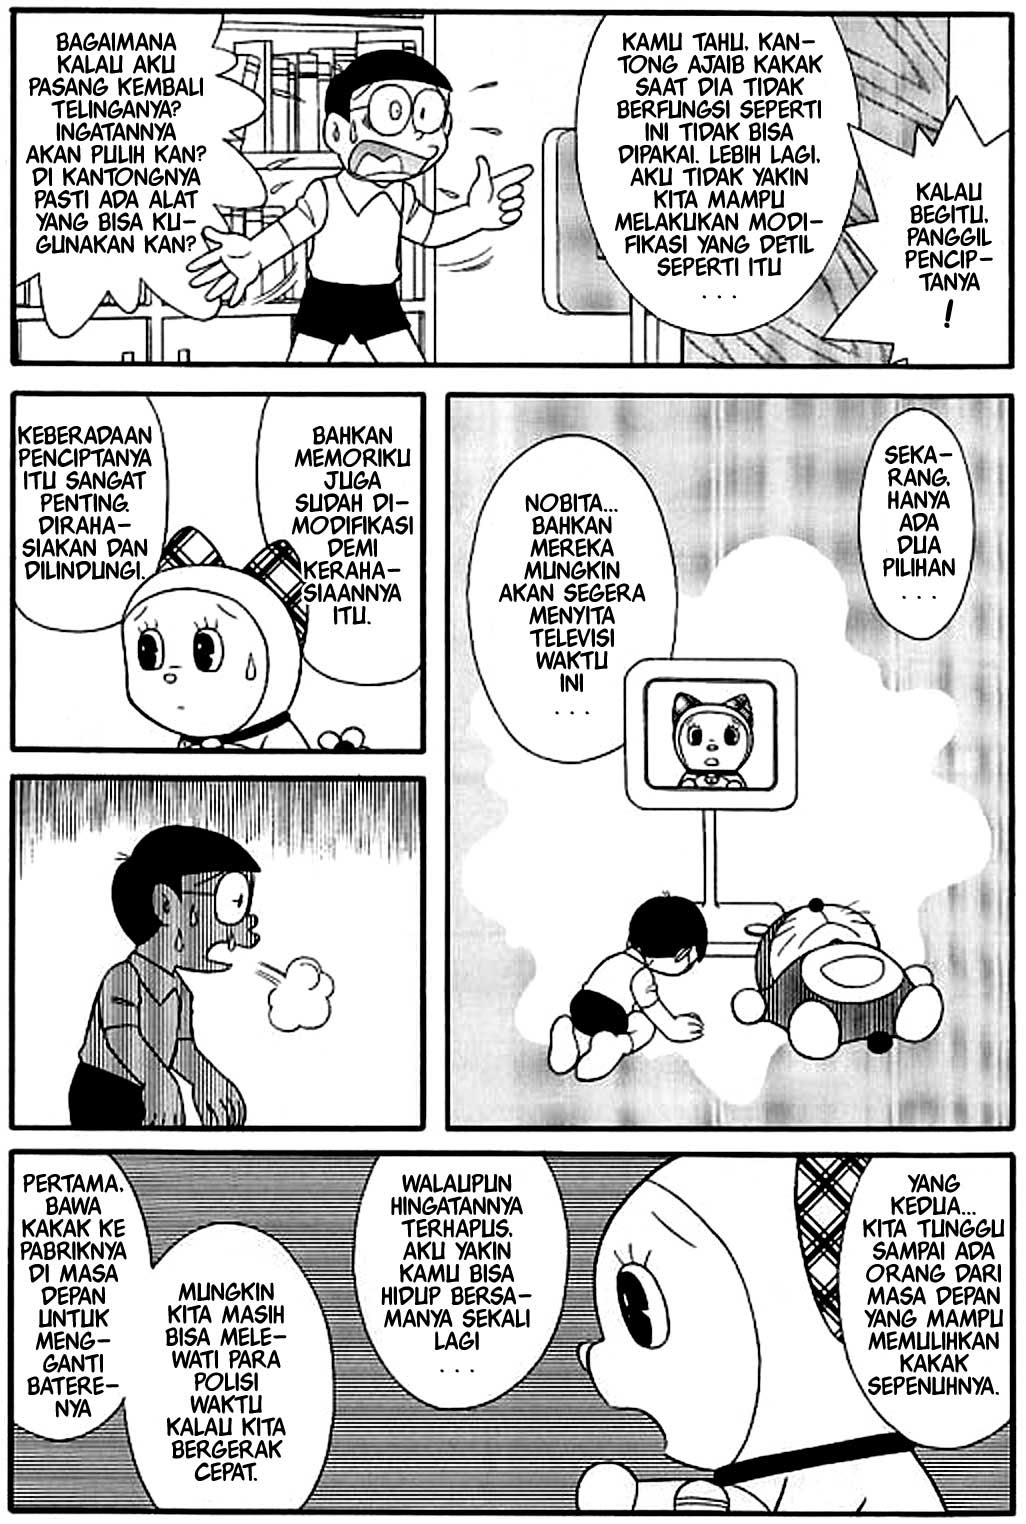 Komik Doraemon Yang Lucu Kolektor Lucu